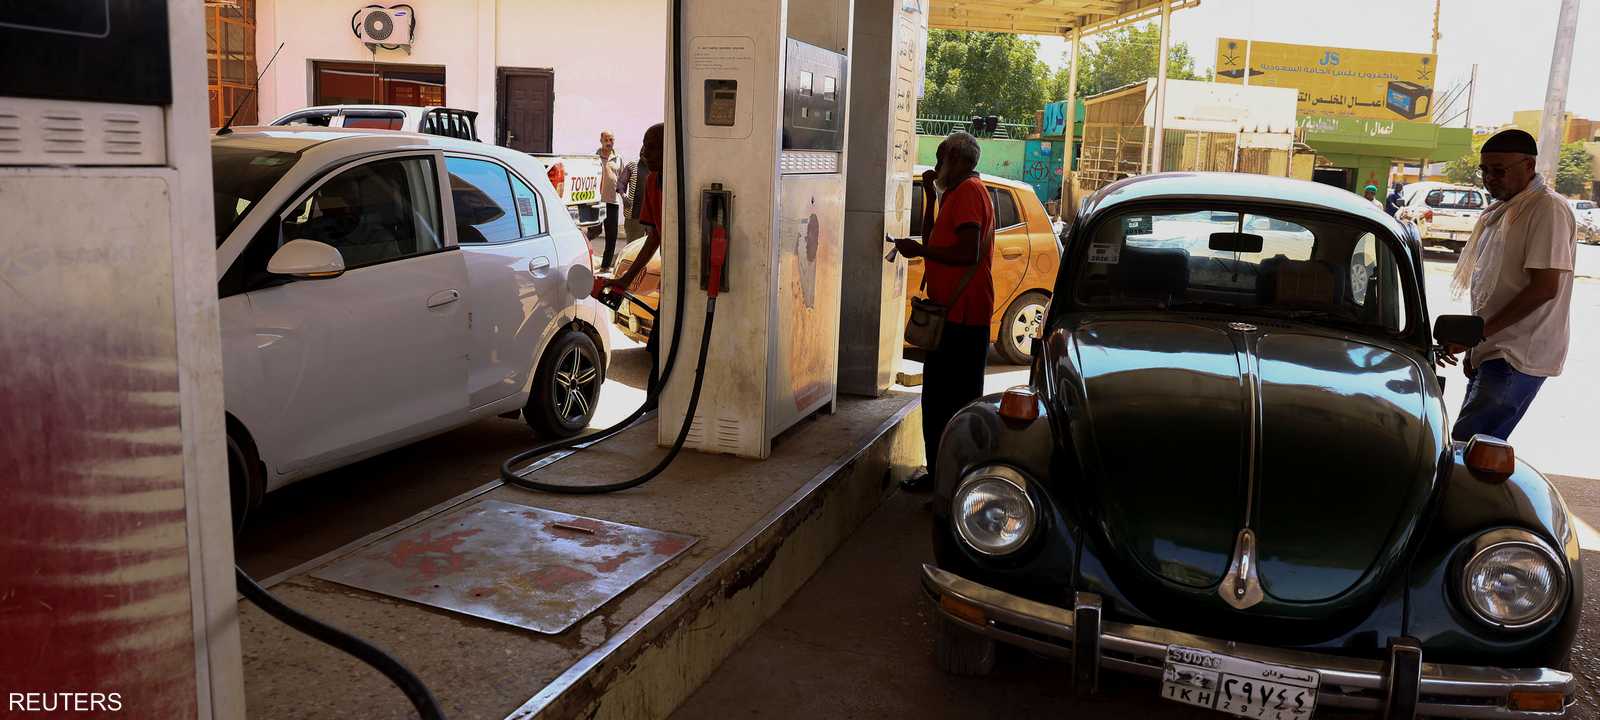 ارتفاع أسعار الوقود للمرة الرابعة في أقل من شهرين بالسودان